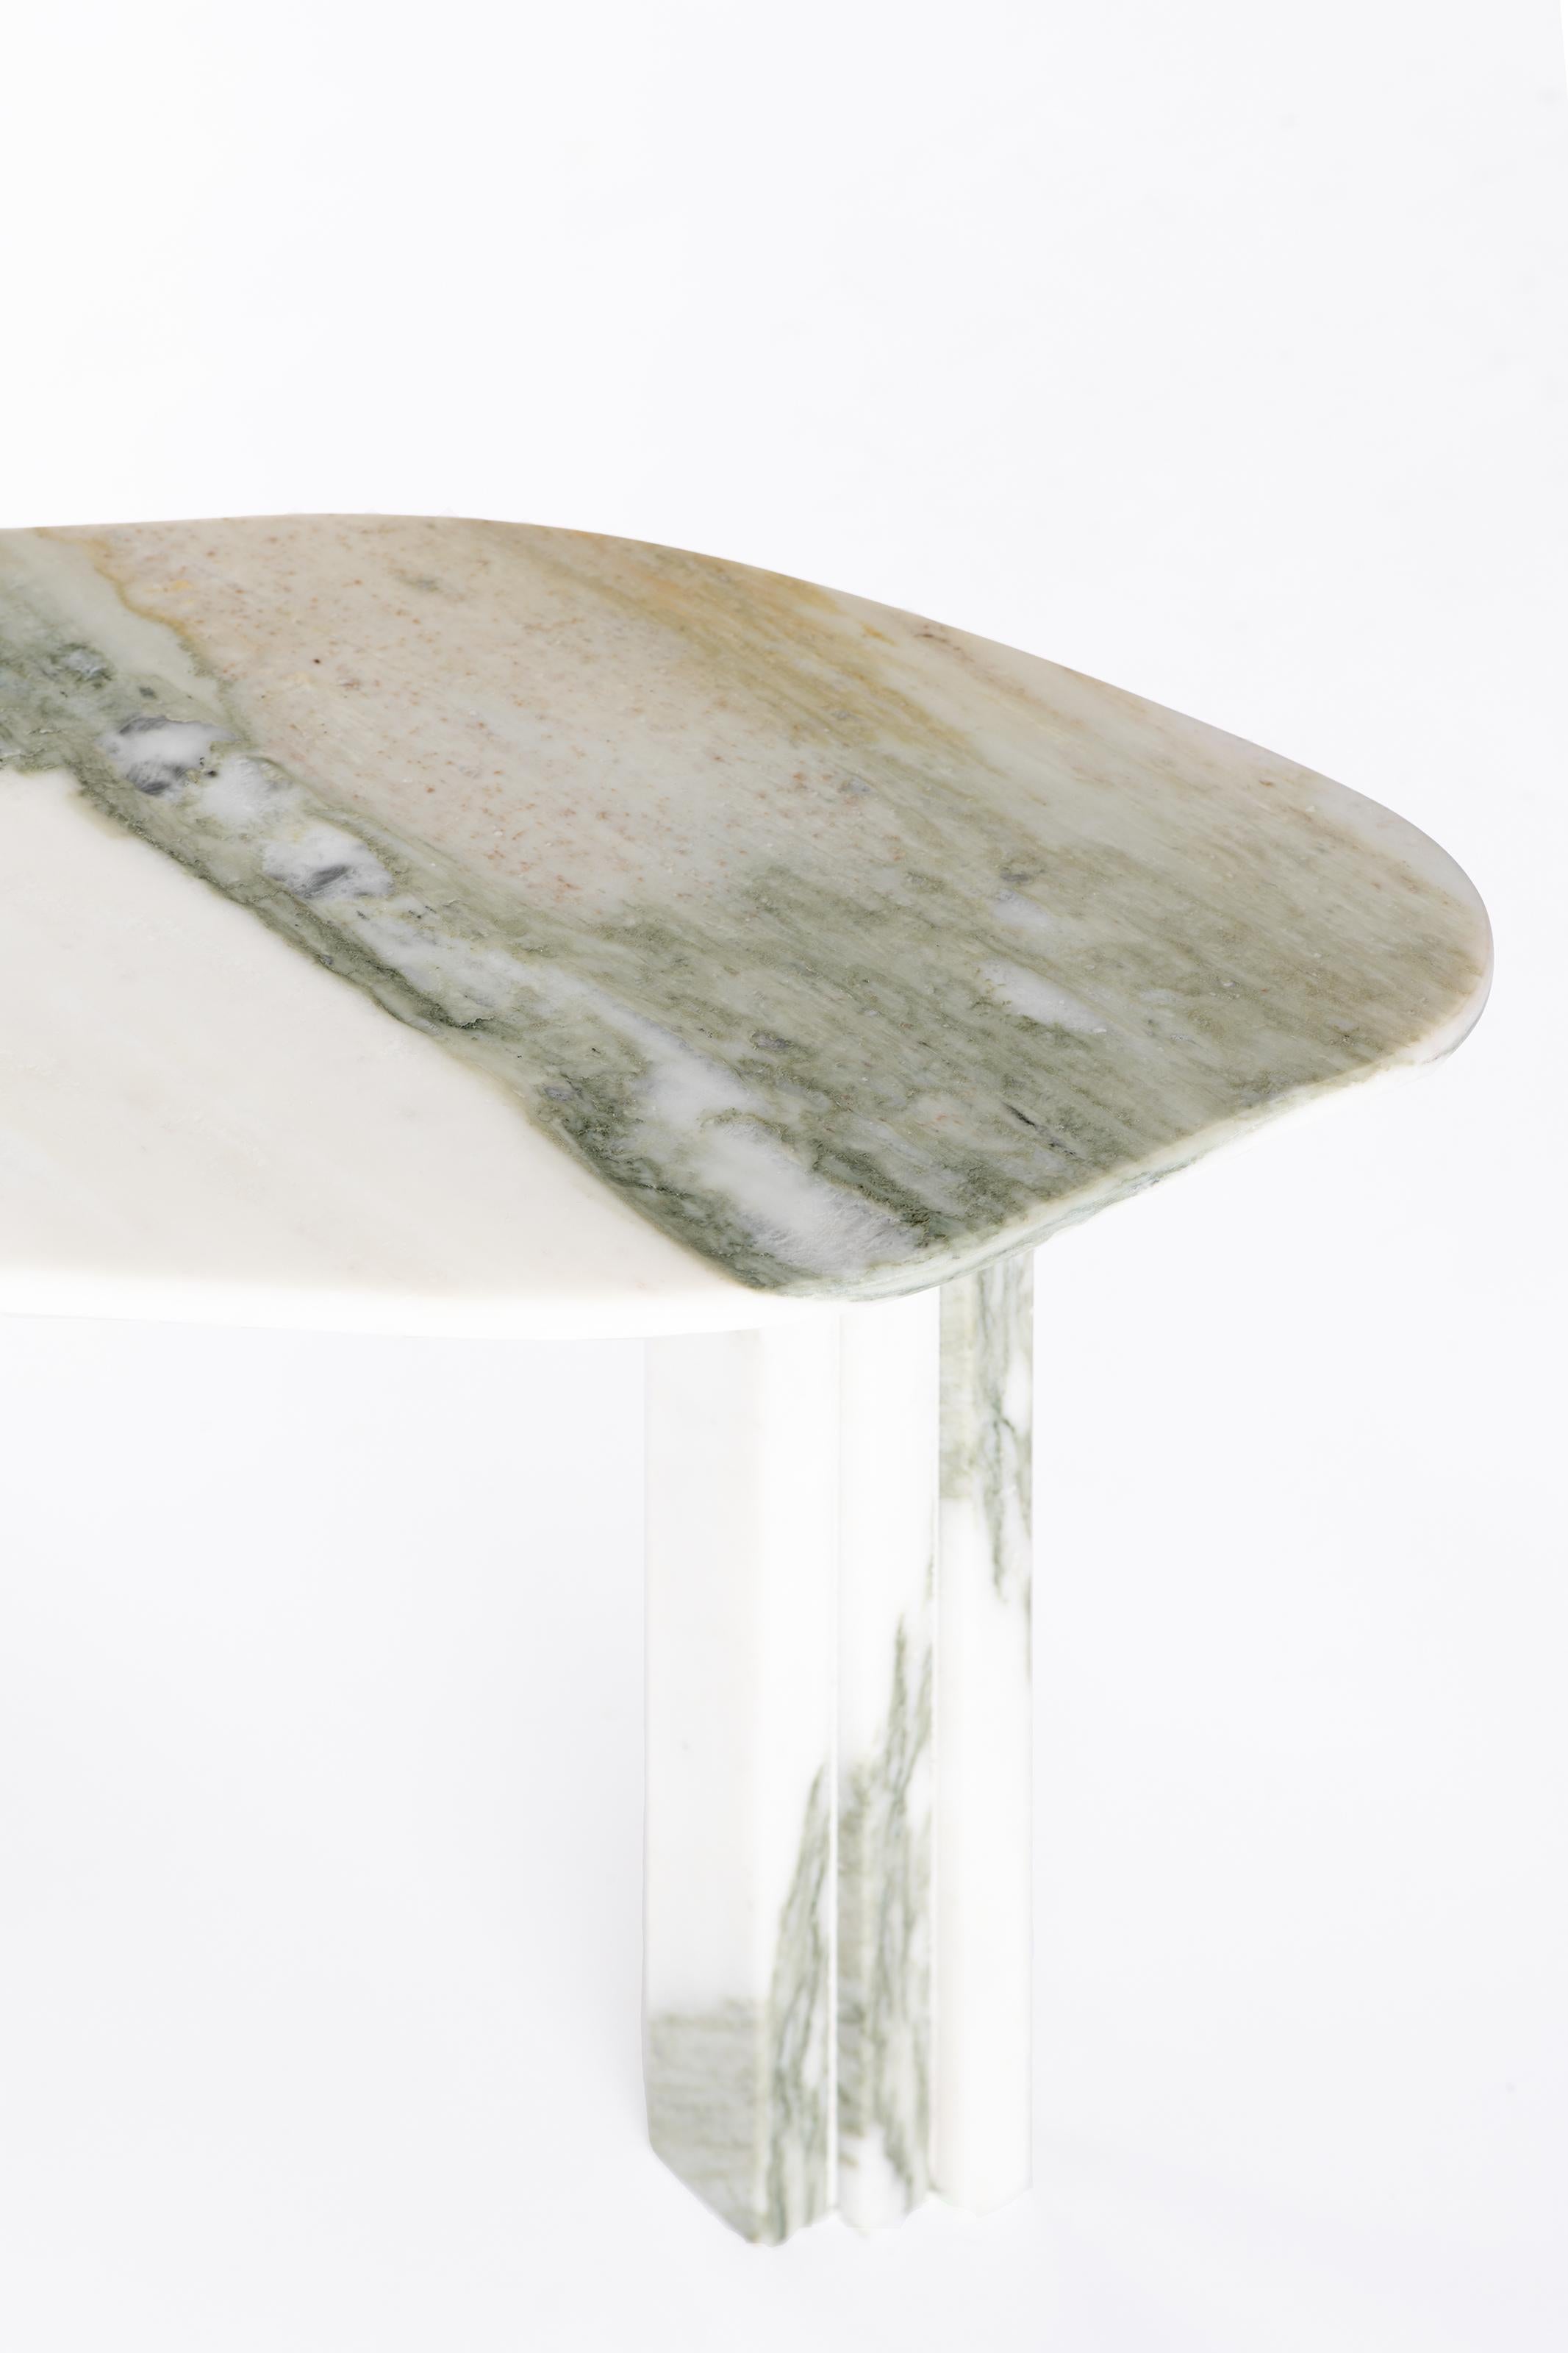 Organic Modern Bicolor Sculptural Marble Table, Lorenzo Bini